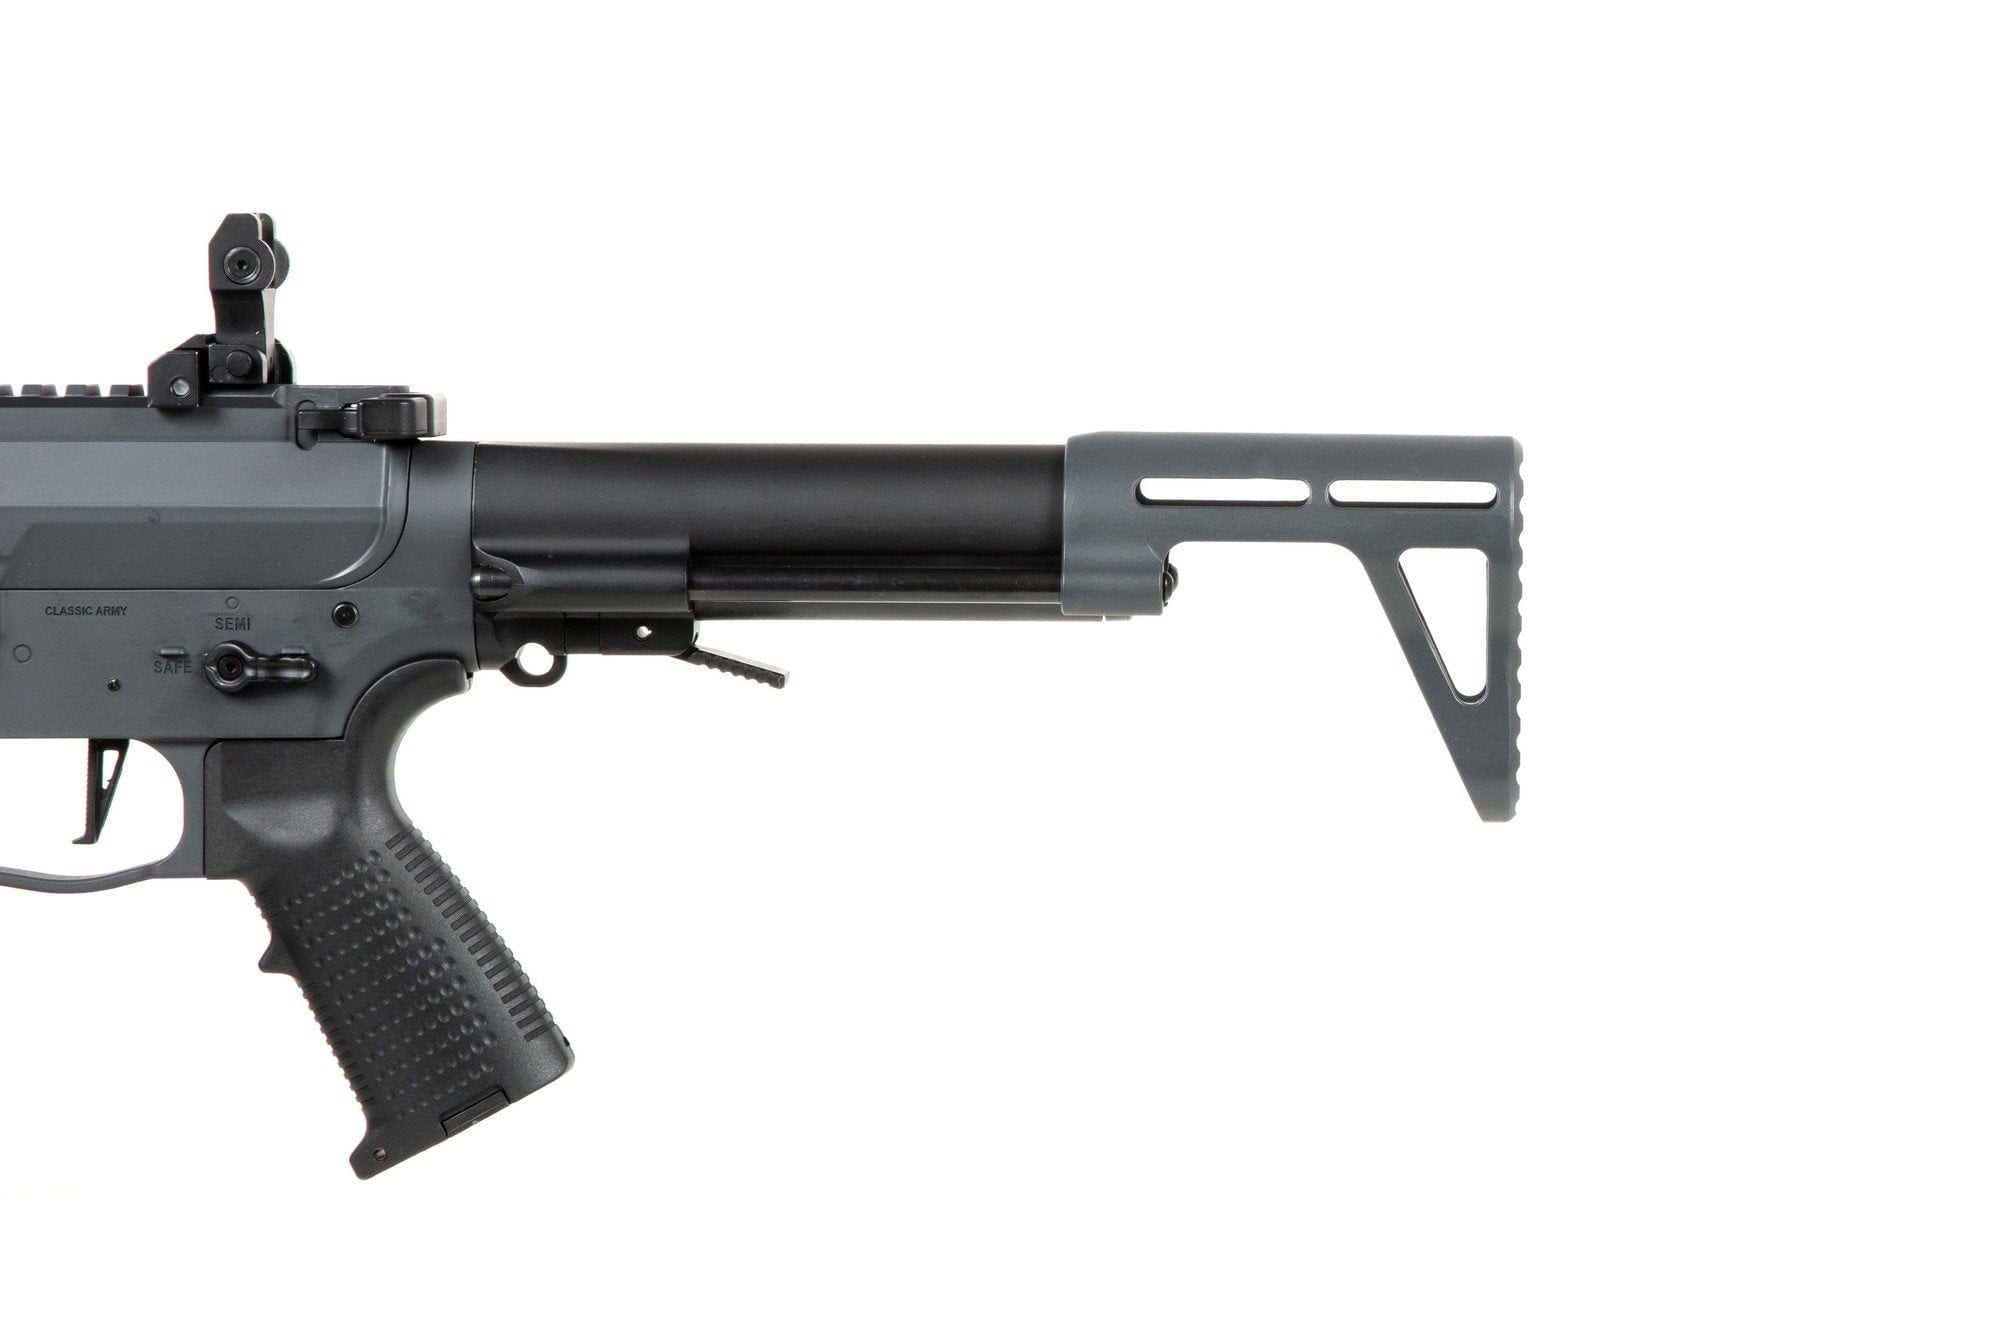 Nemesis X9 submachine gun - grey